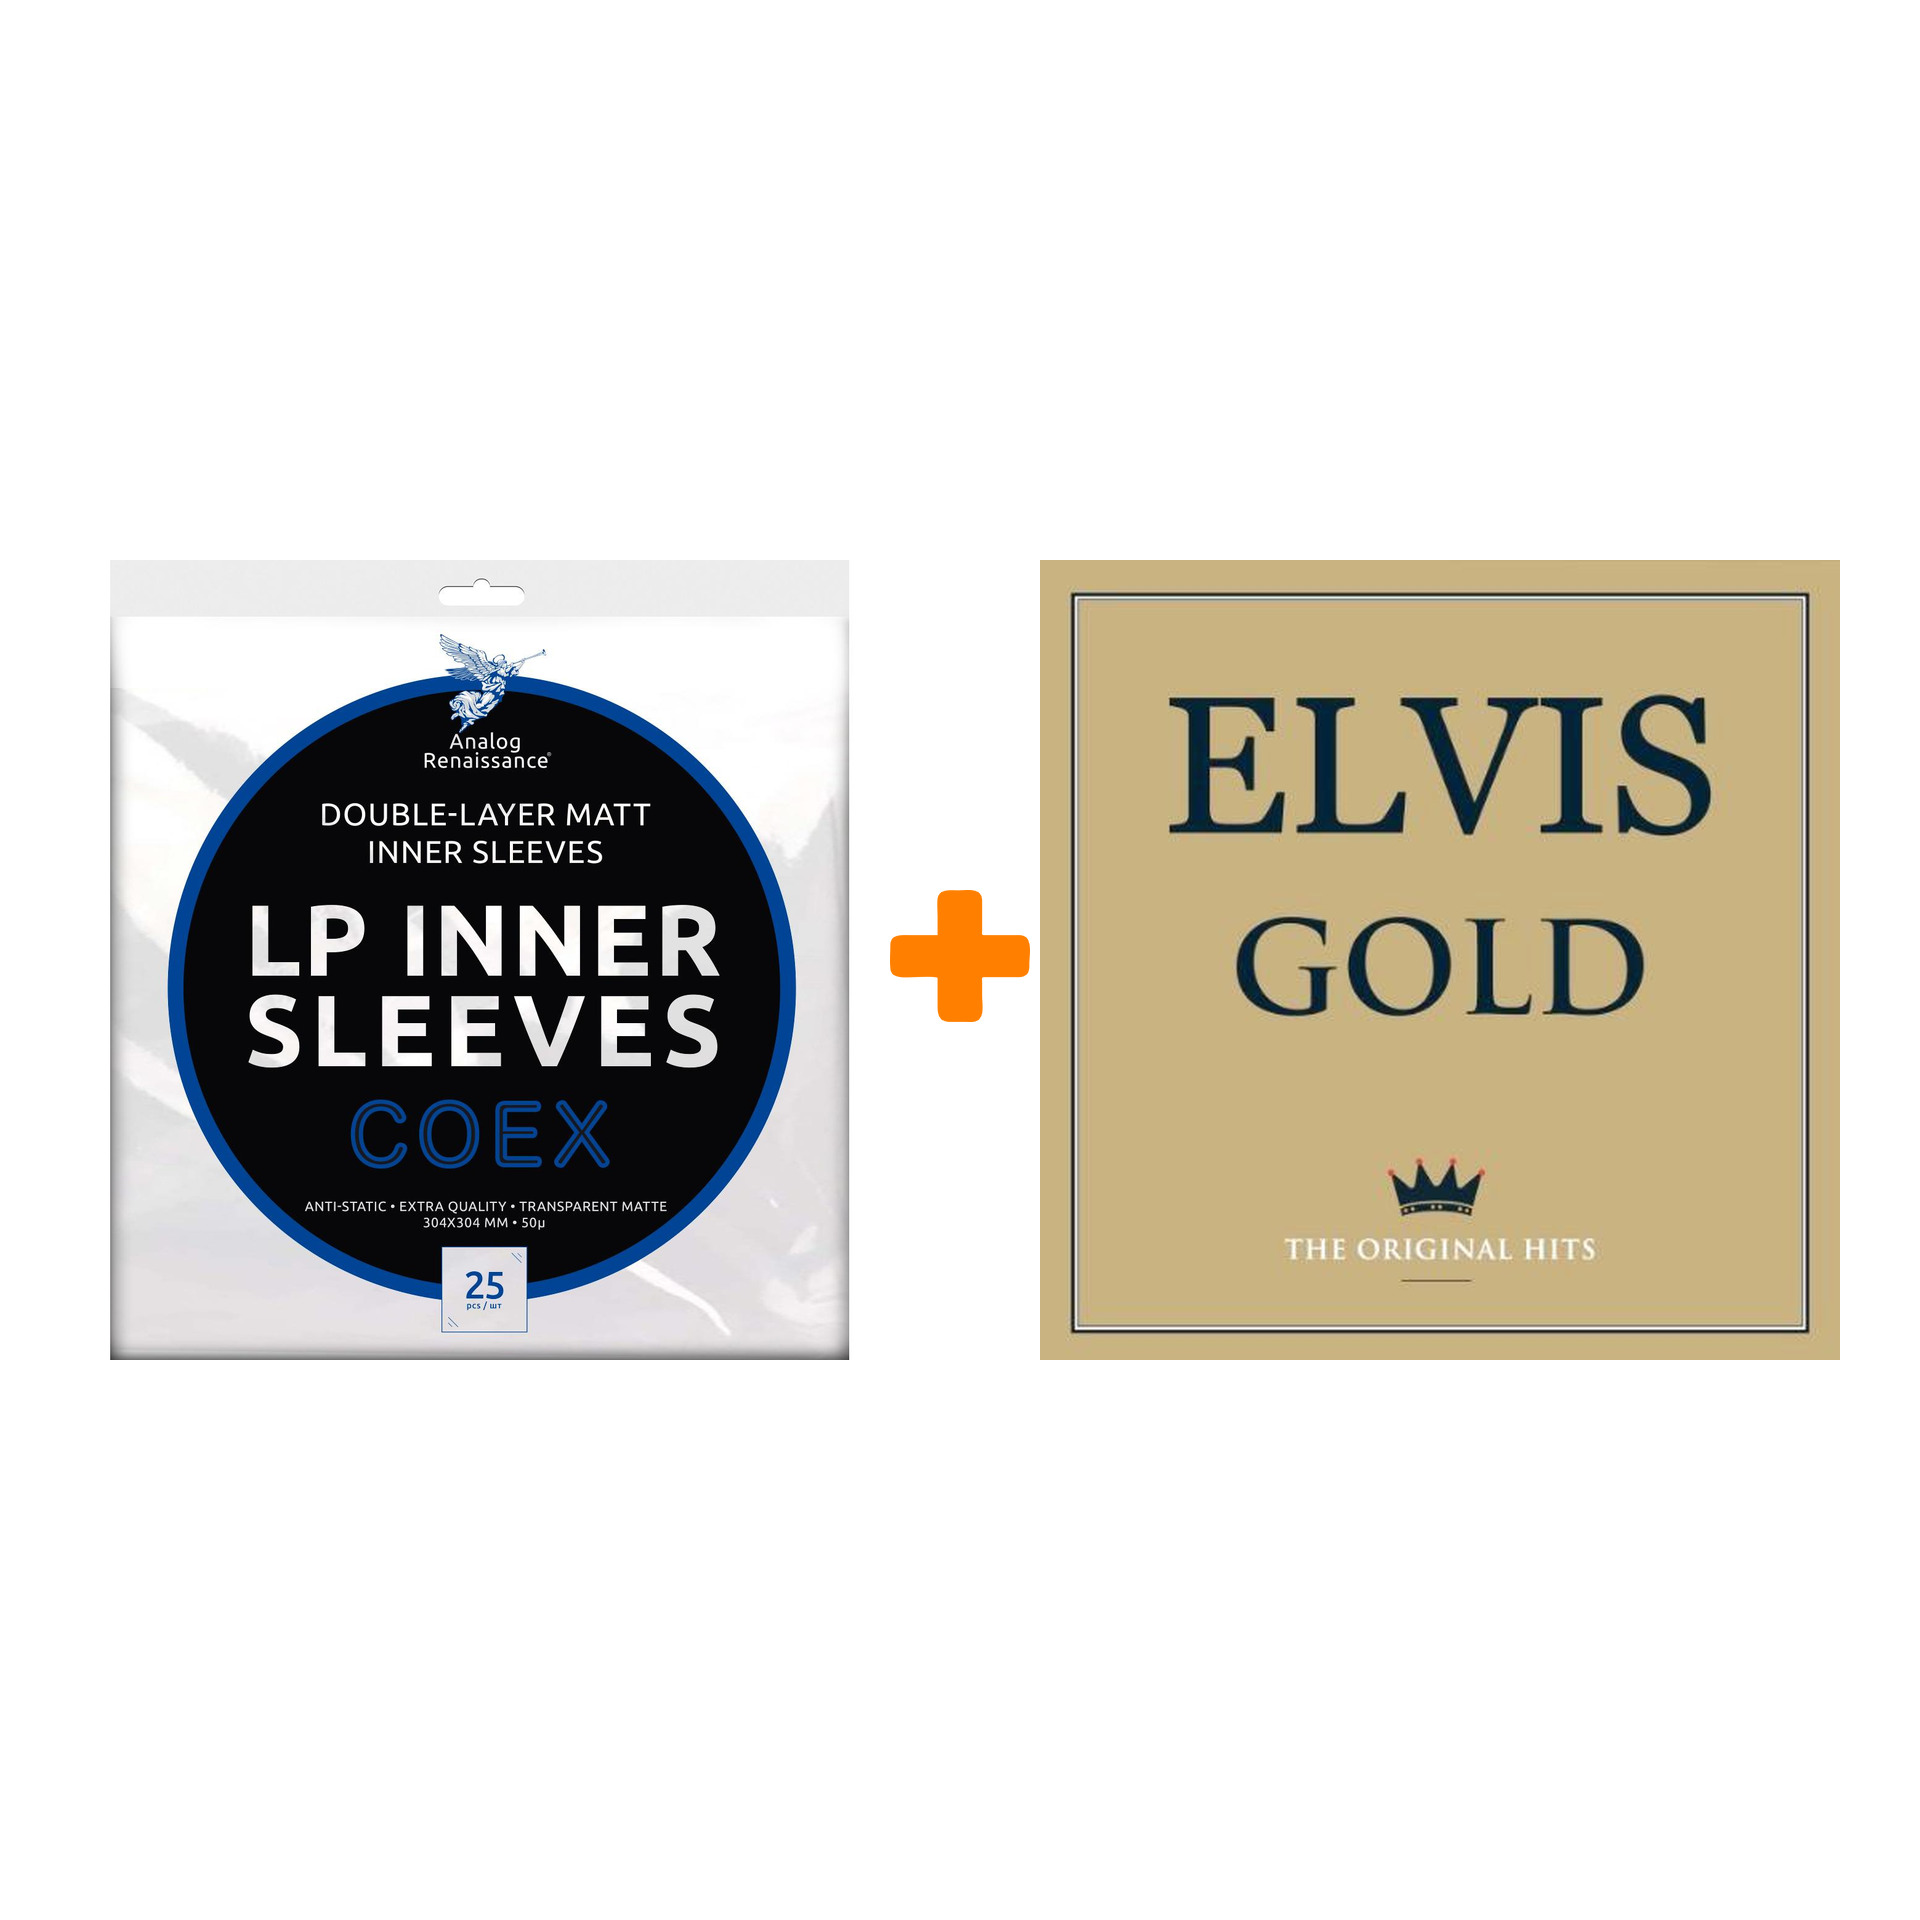 PRESLEY ELVIS Gold 2LP + Конверты внутренние COEX для грампластинок 12 25шт Набор